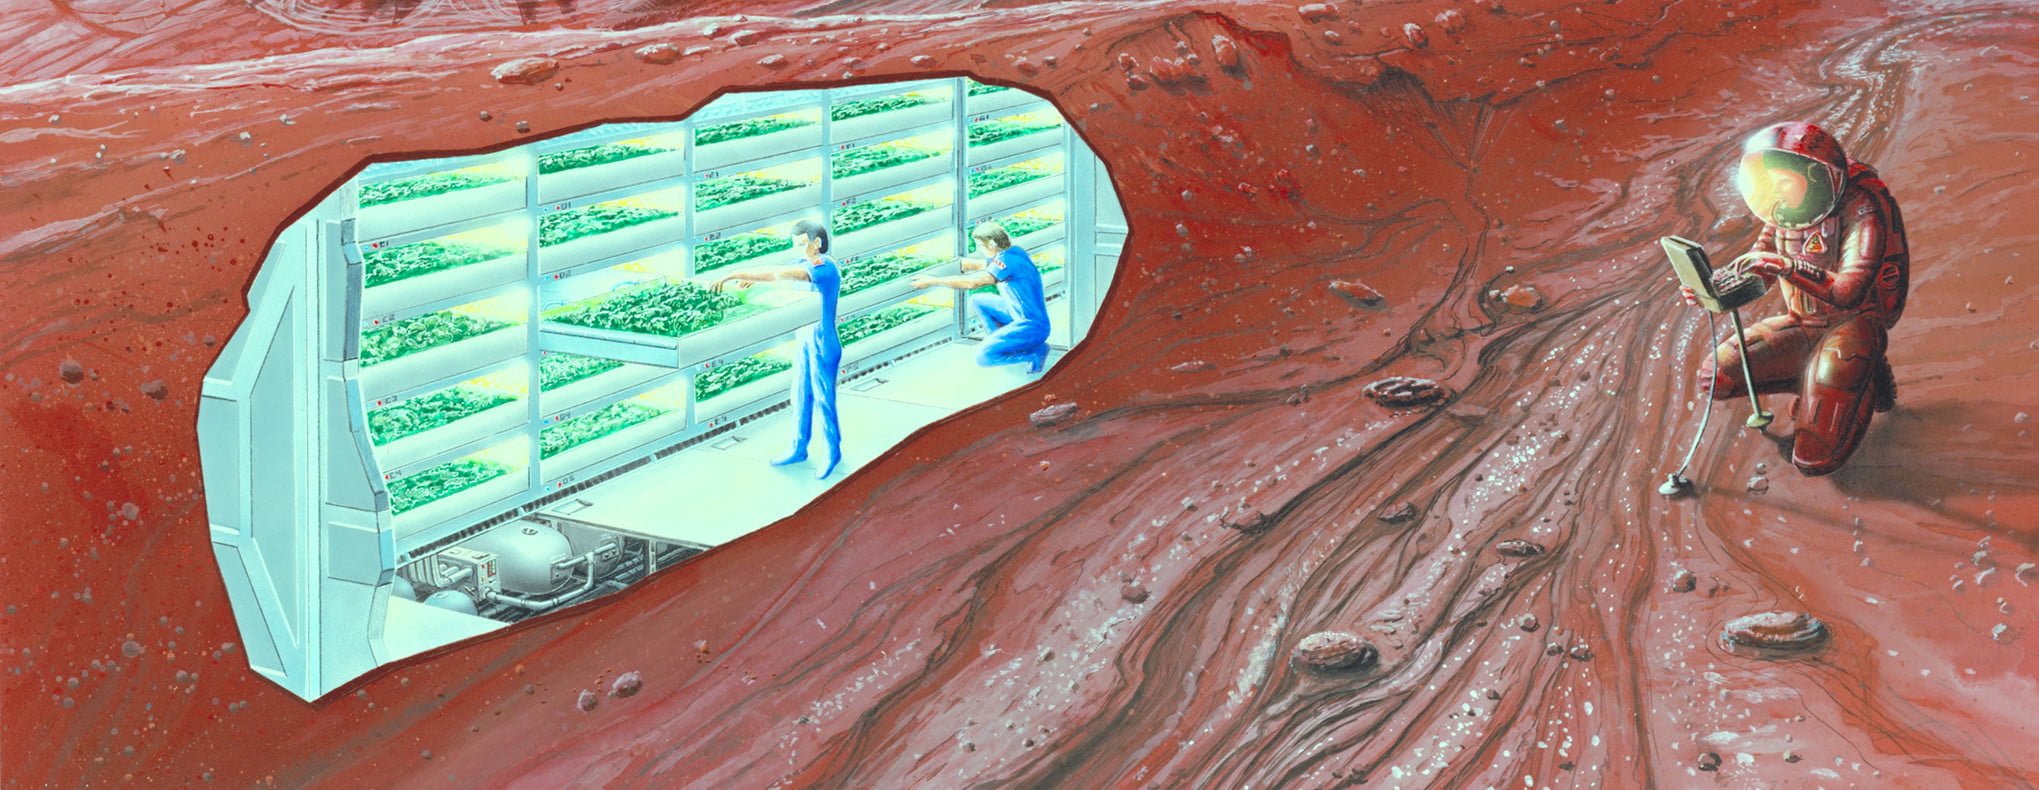 Concept Mars Colony E1430939981884 مجلة نقطة العلمية